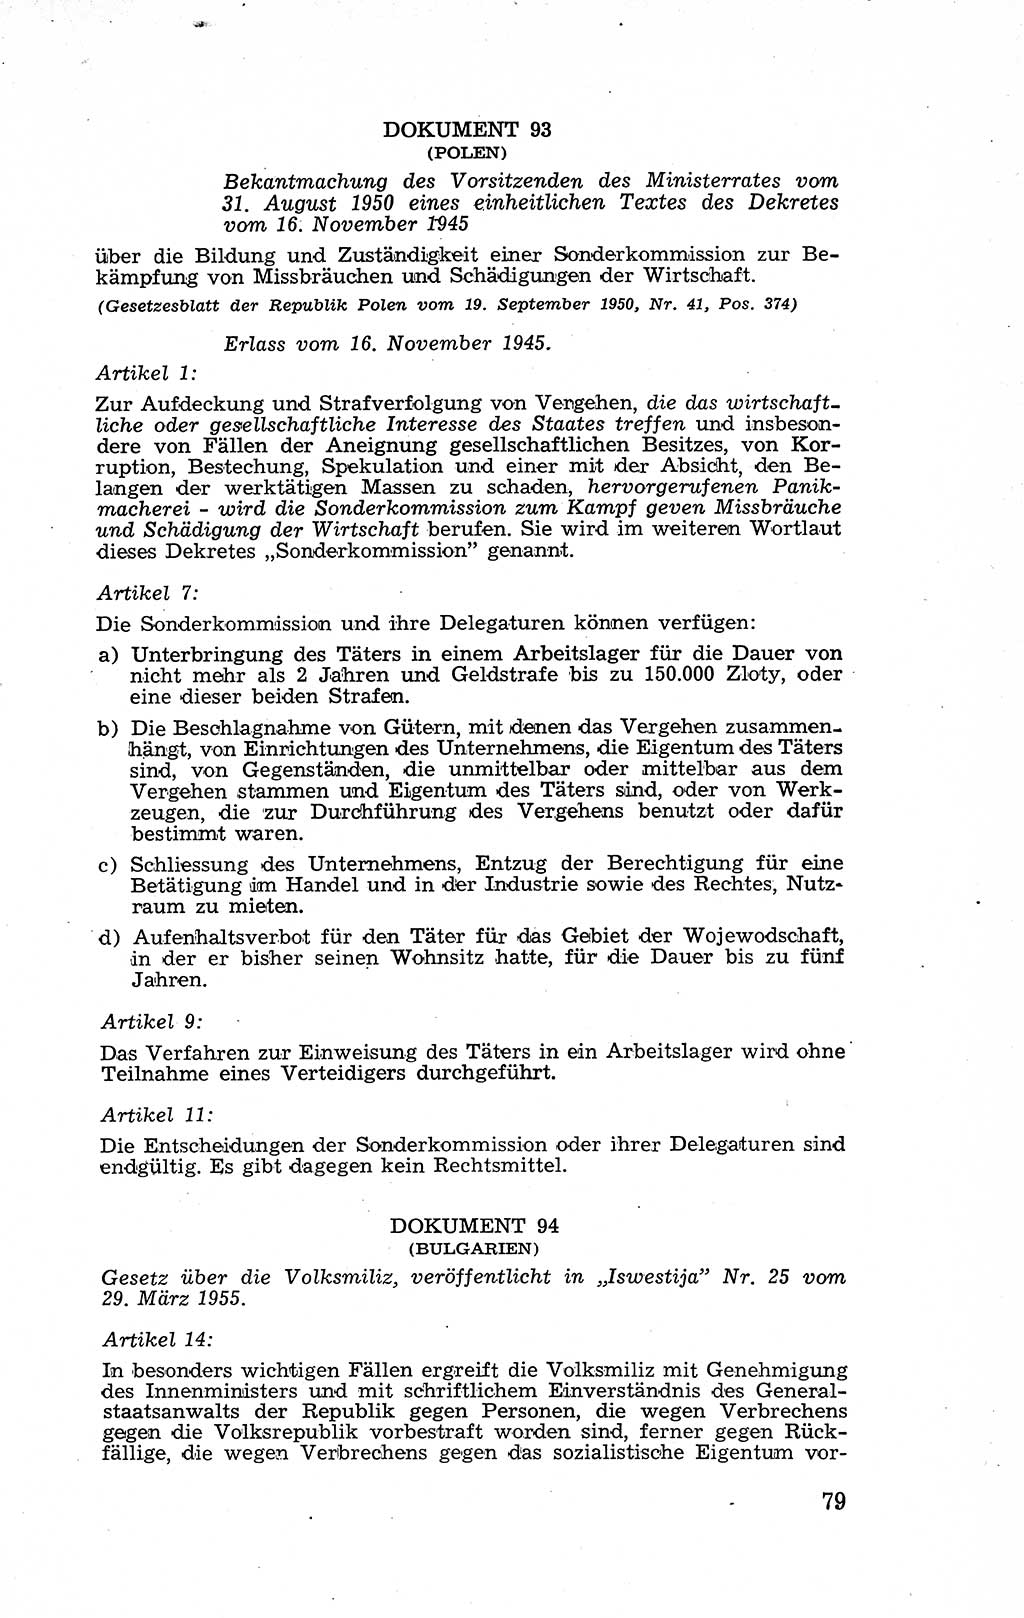 Recht in Fesseln, Dokumente, Internationale Juristen-Kommission [Bundesrepublik Deutschland (BRD)] 1955, Seite 79 (R. Dok. IJK BRD 1955, S. 79)